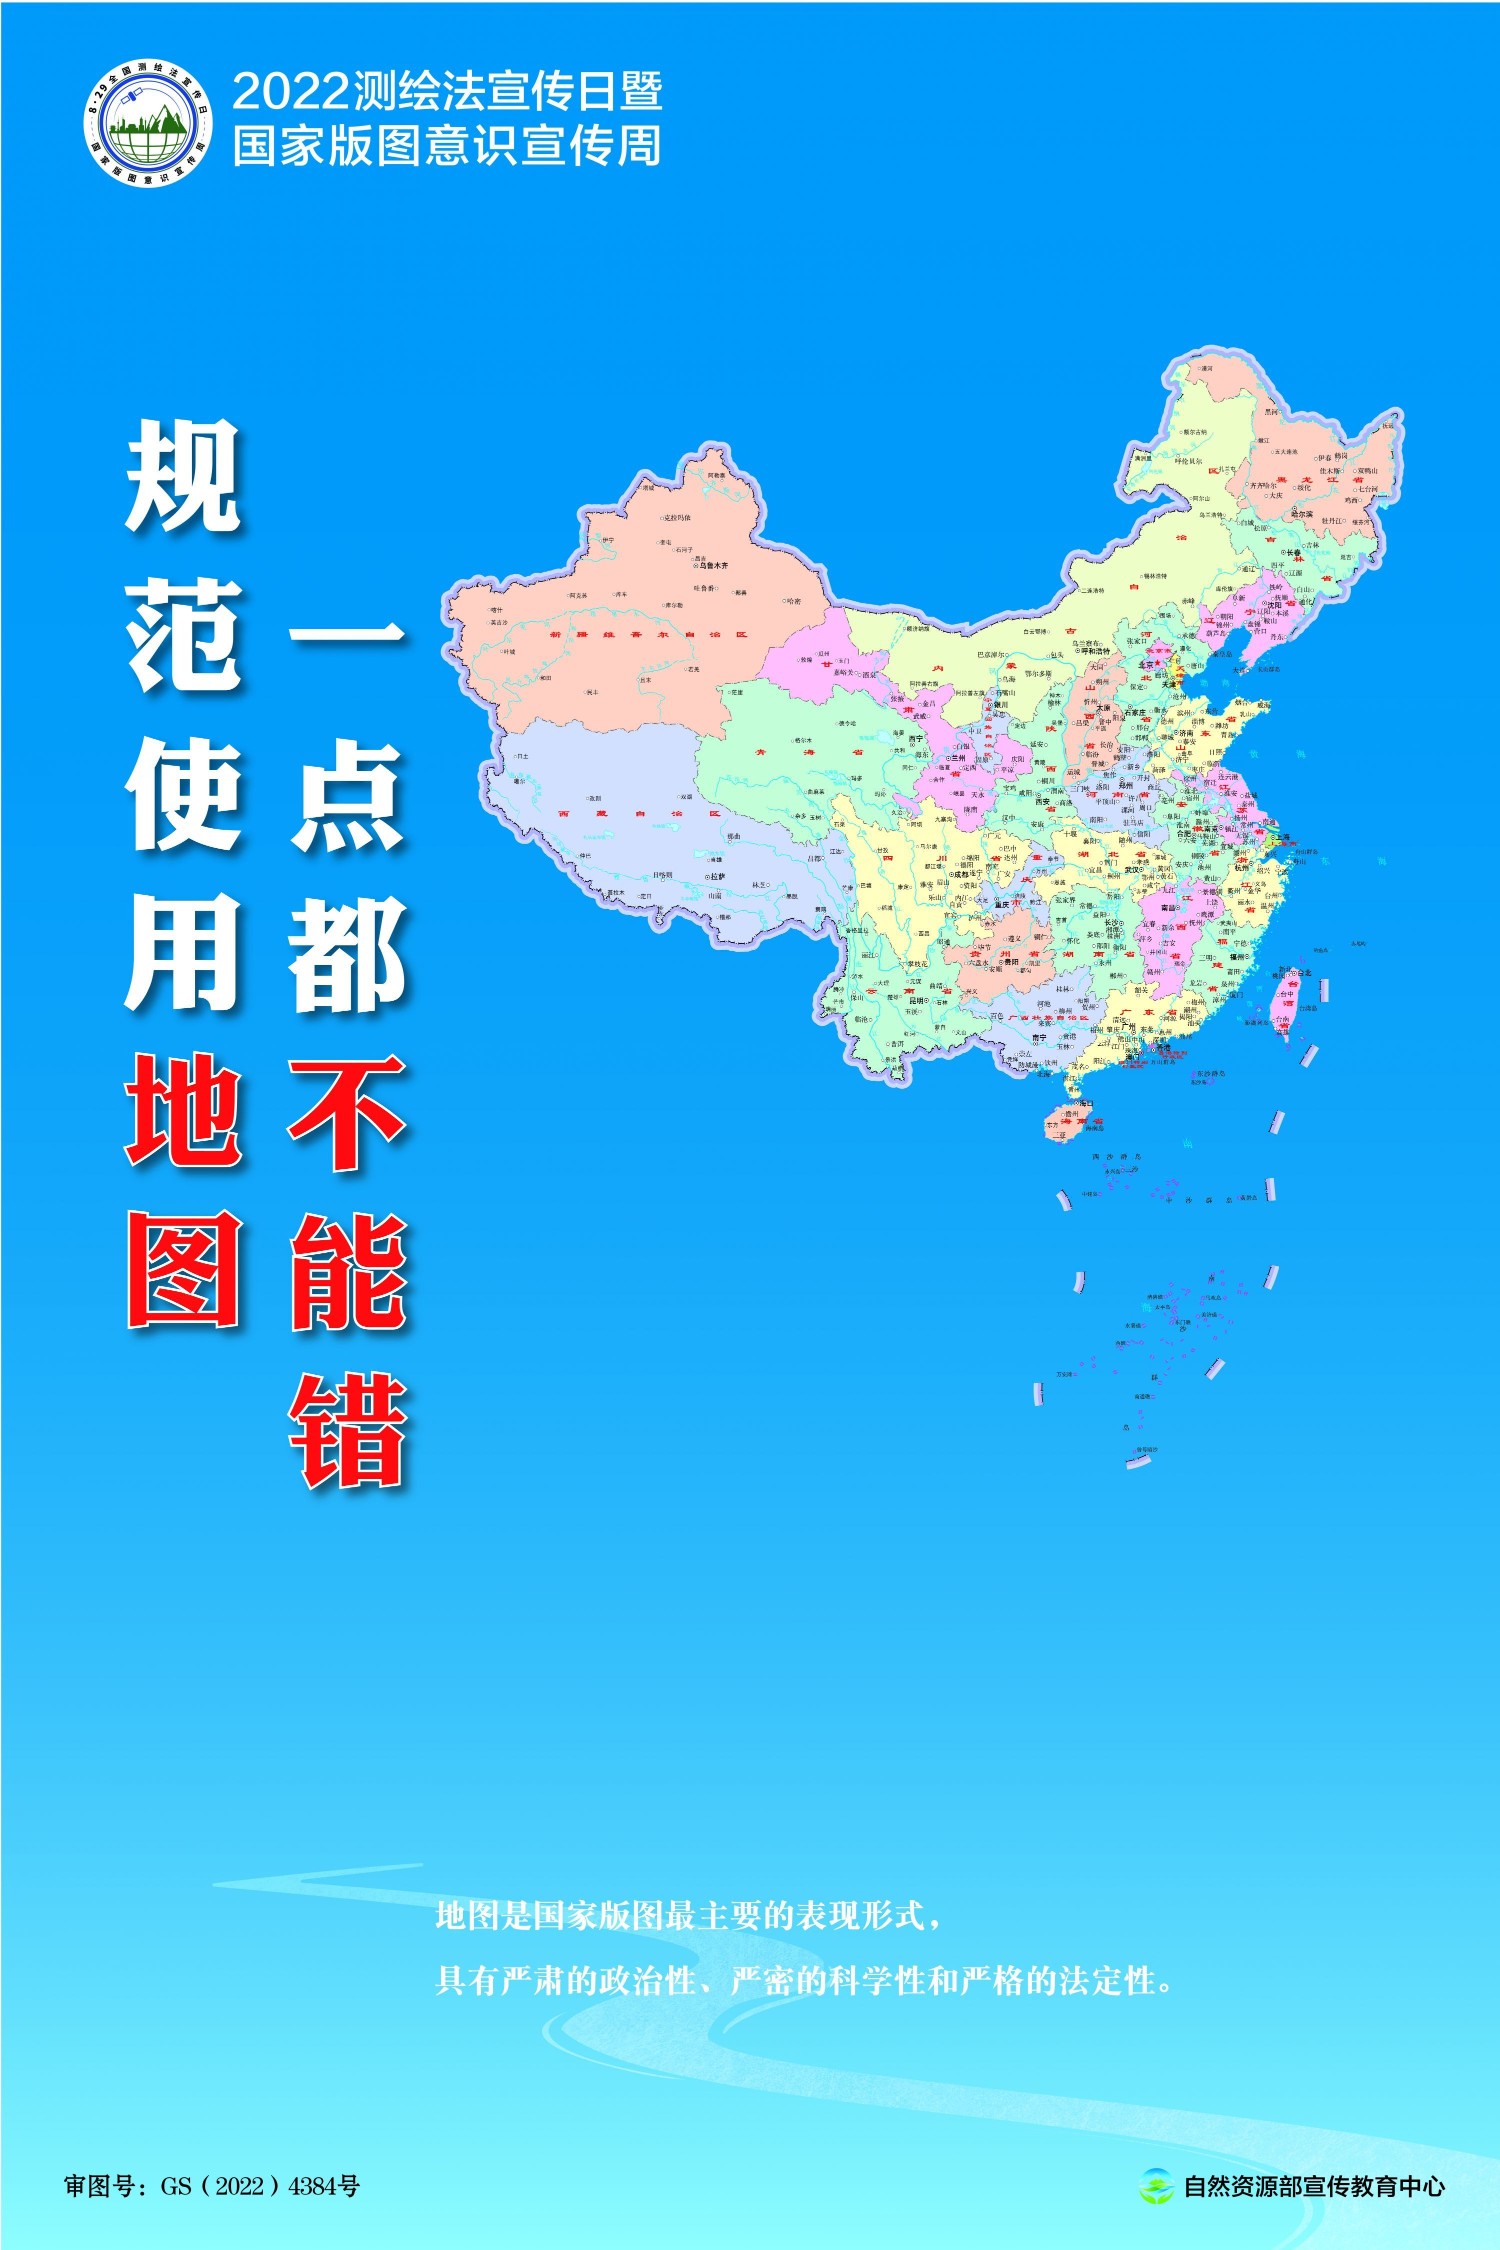 来看武汉各区最新,最全地图→